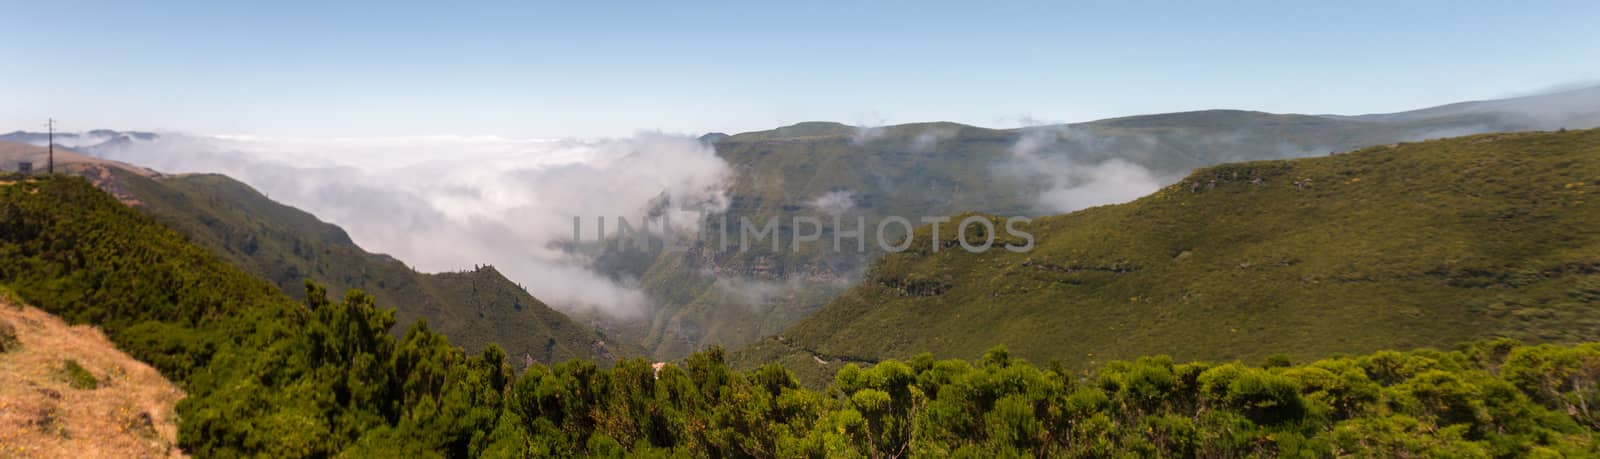 Panorama of Madeira island landscape, near levada 25 fontes, Portugal.